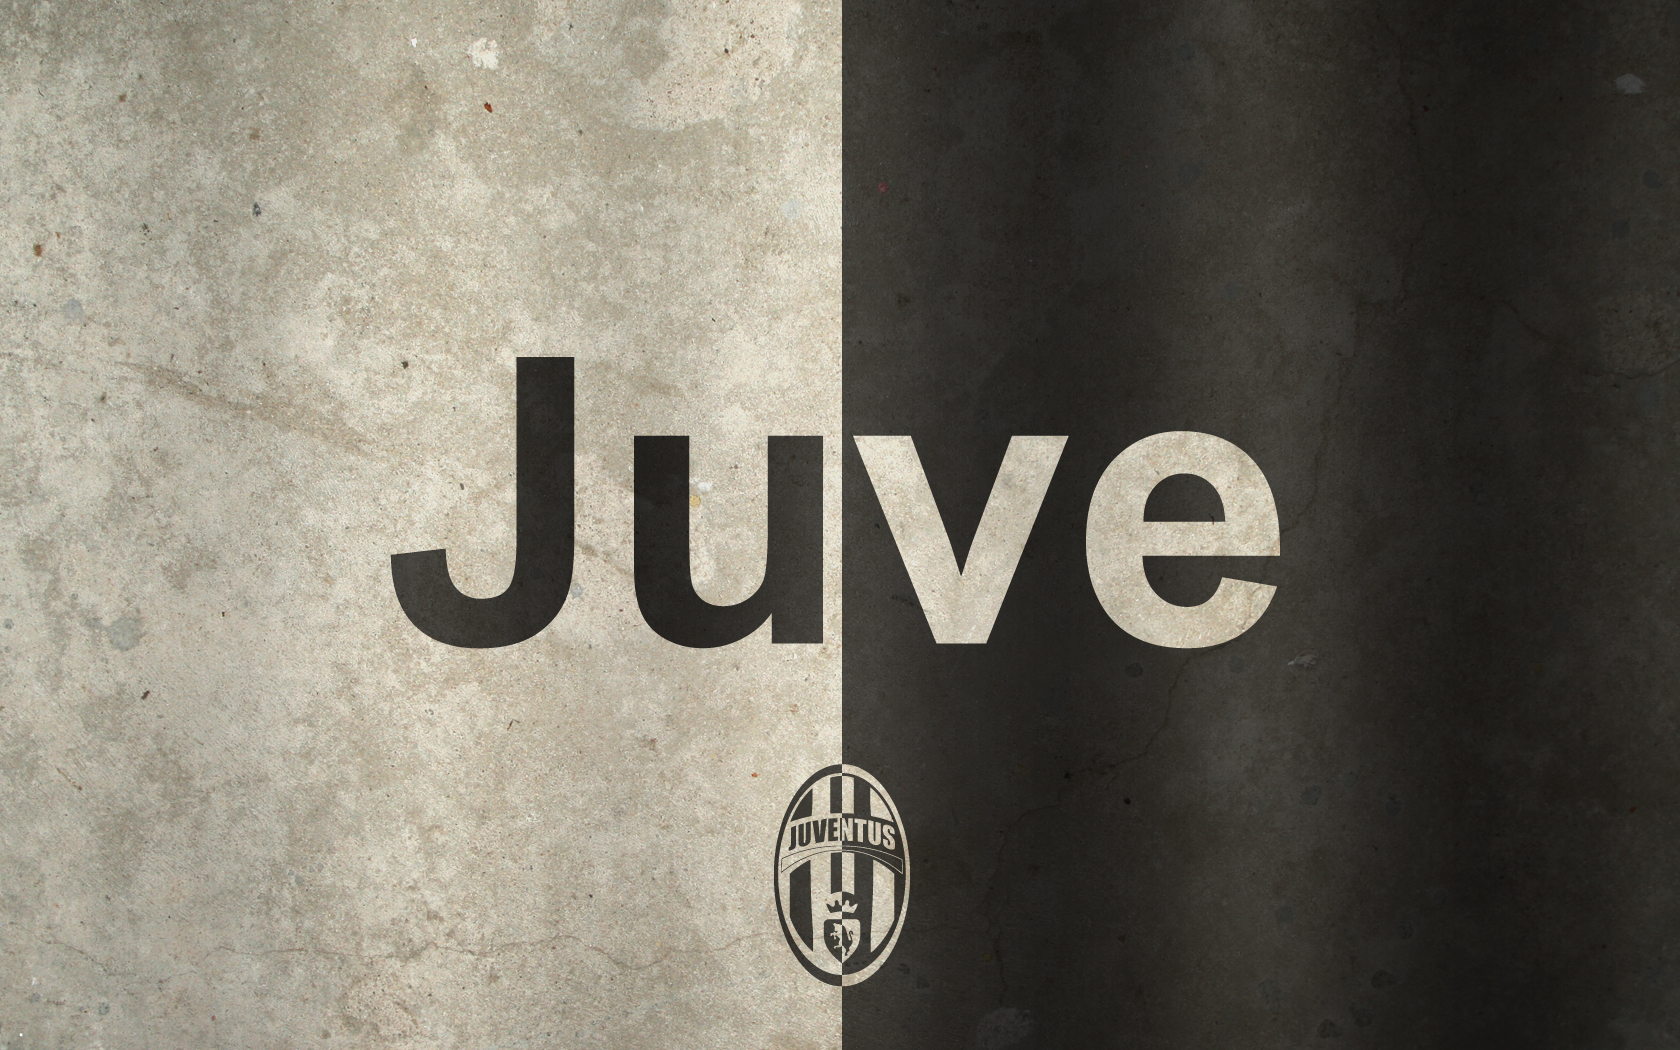 Full Size Juventus Logo Wallpaper Live HD